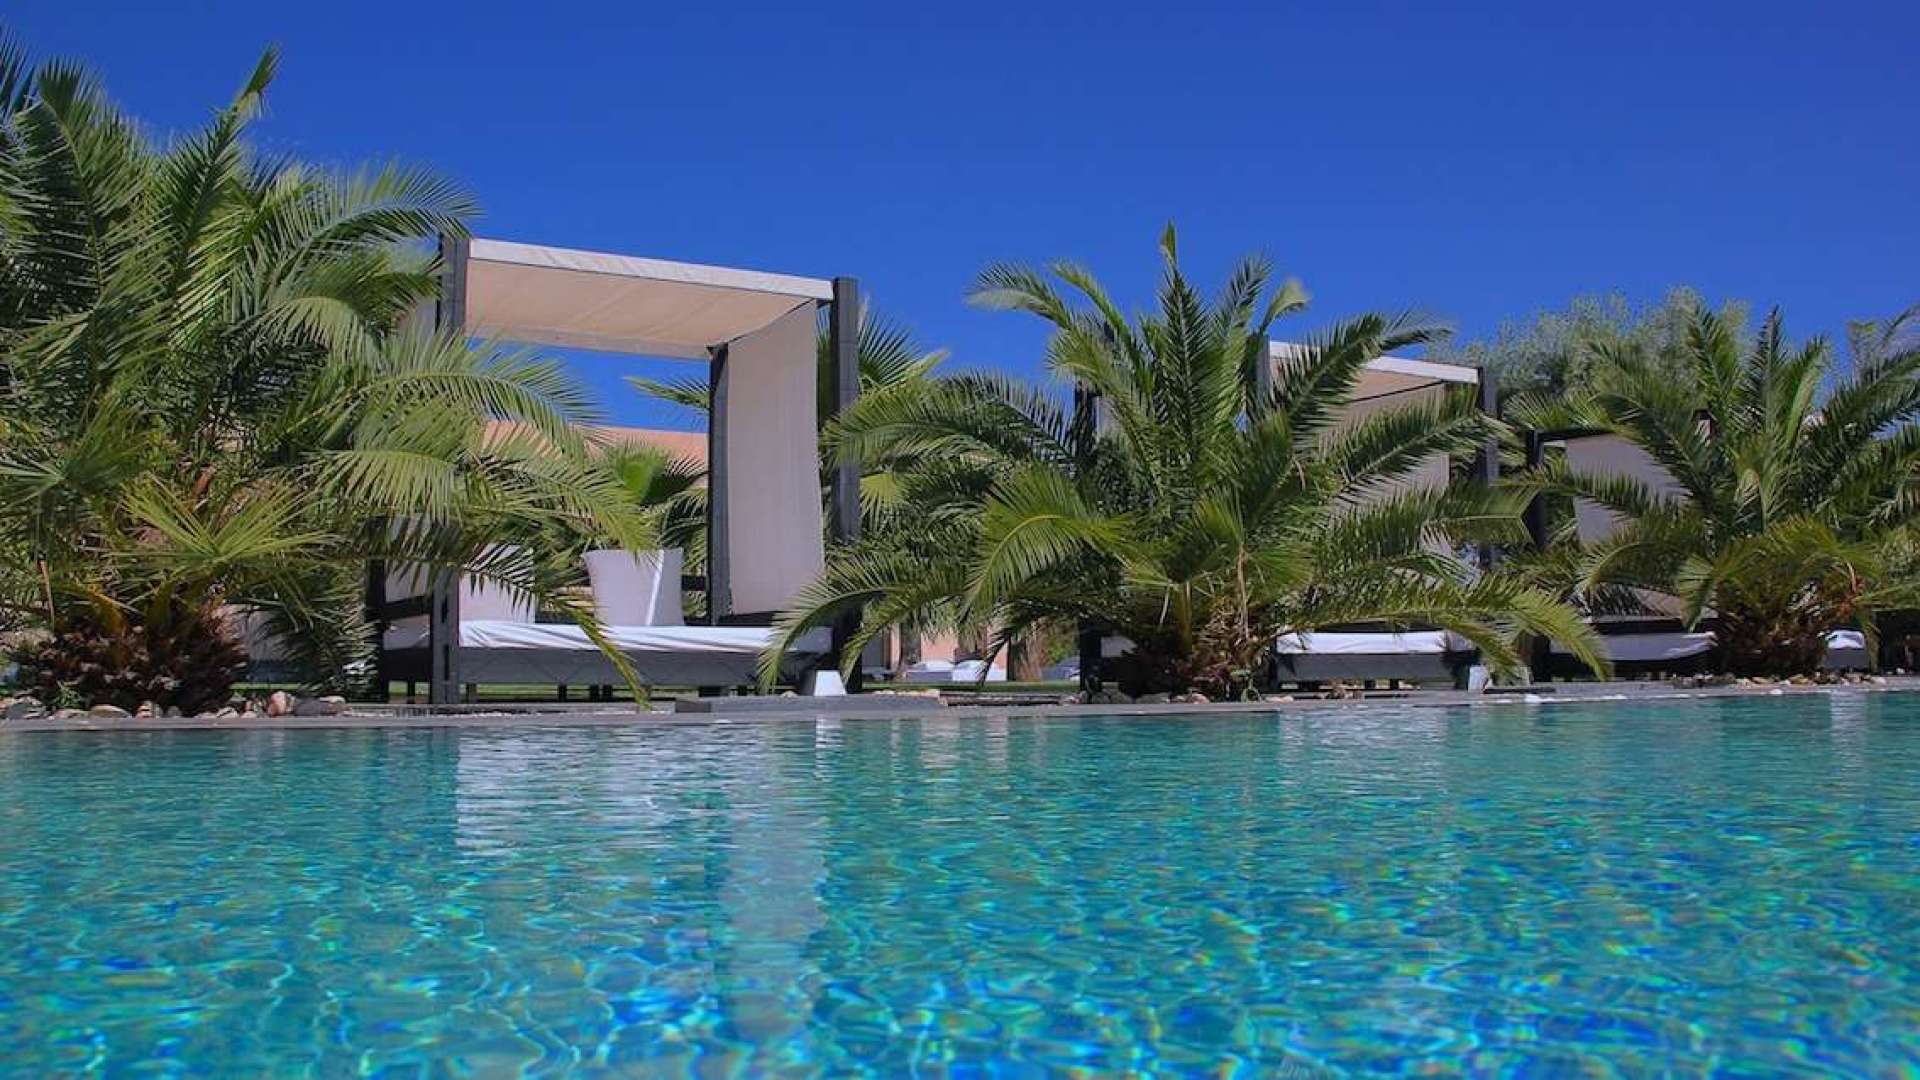 Location de vacances,Villa,Villa 19 chambres avec piscine privée pour mariages et événements ,Marrakech,Route Amizmiz